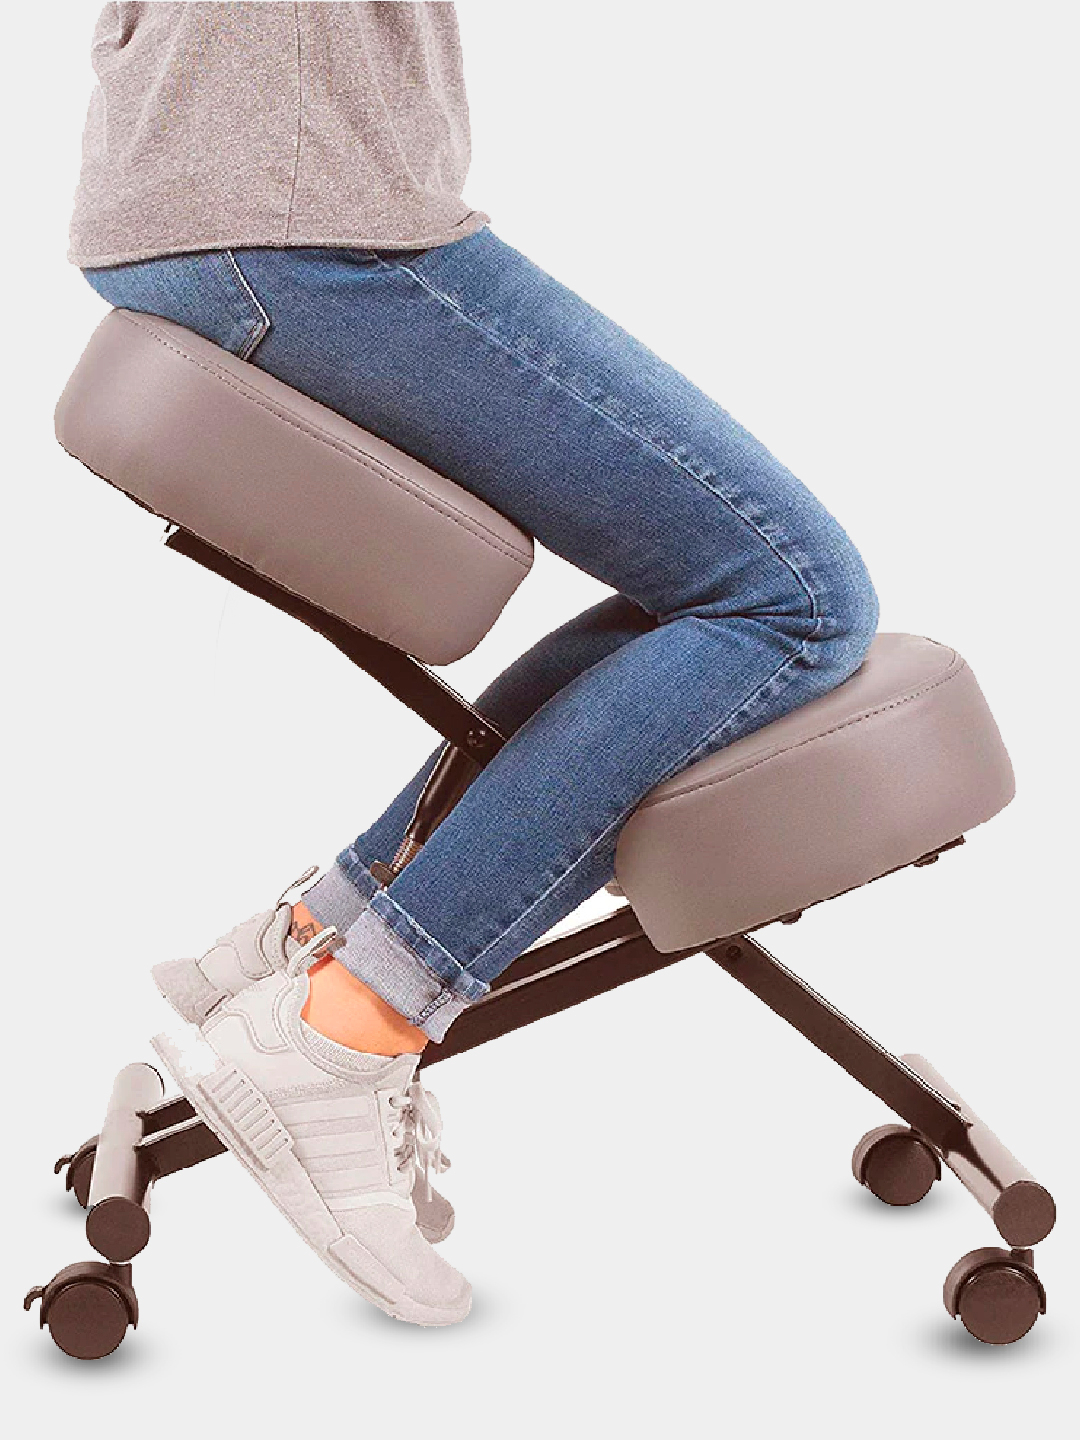 ортопедический стул для ребенка 8 лет